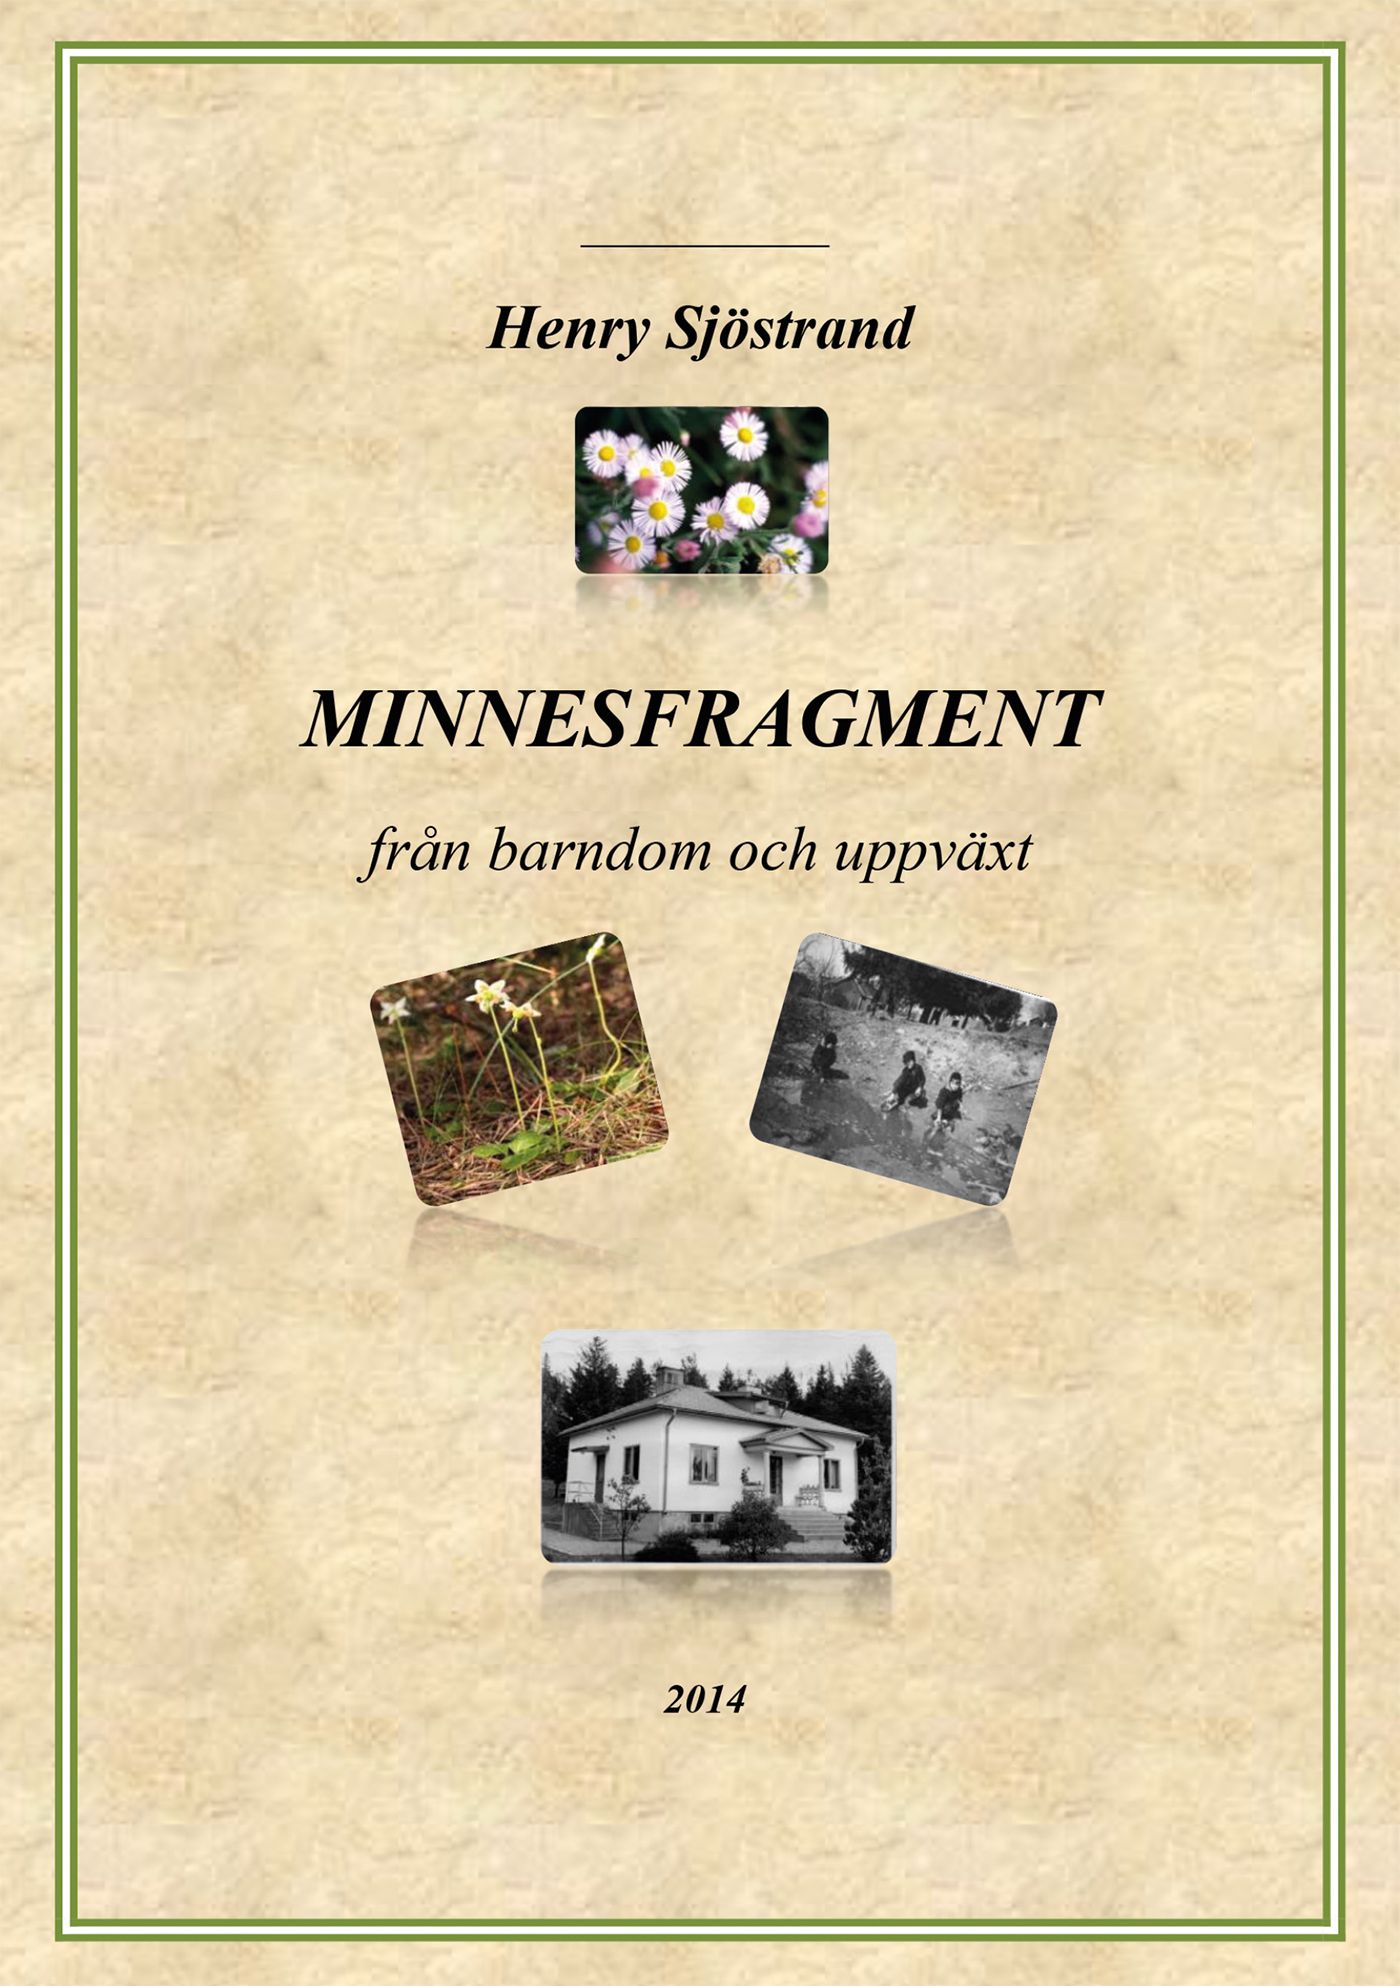 Minnesfragment, e-bog af Henry Sjöstrand